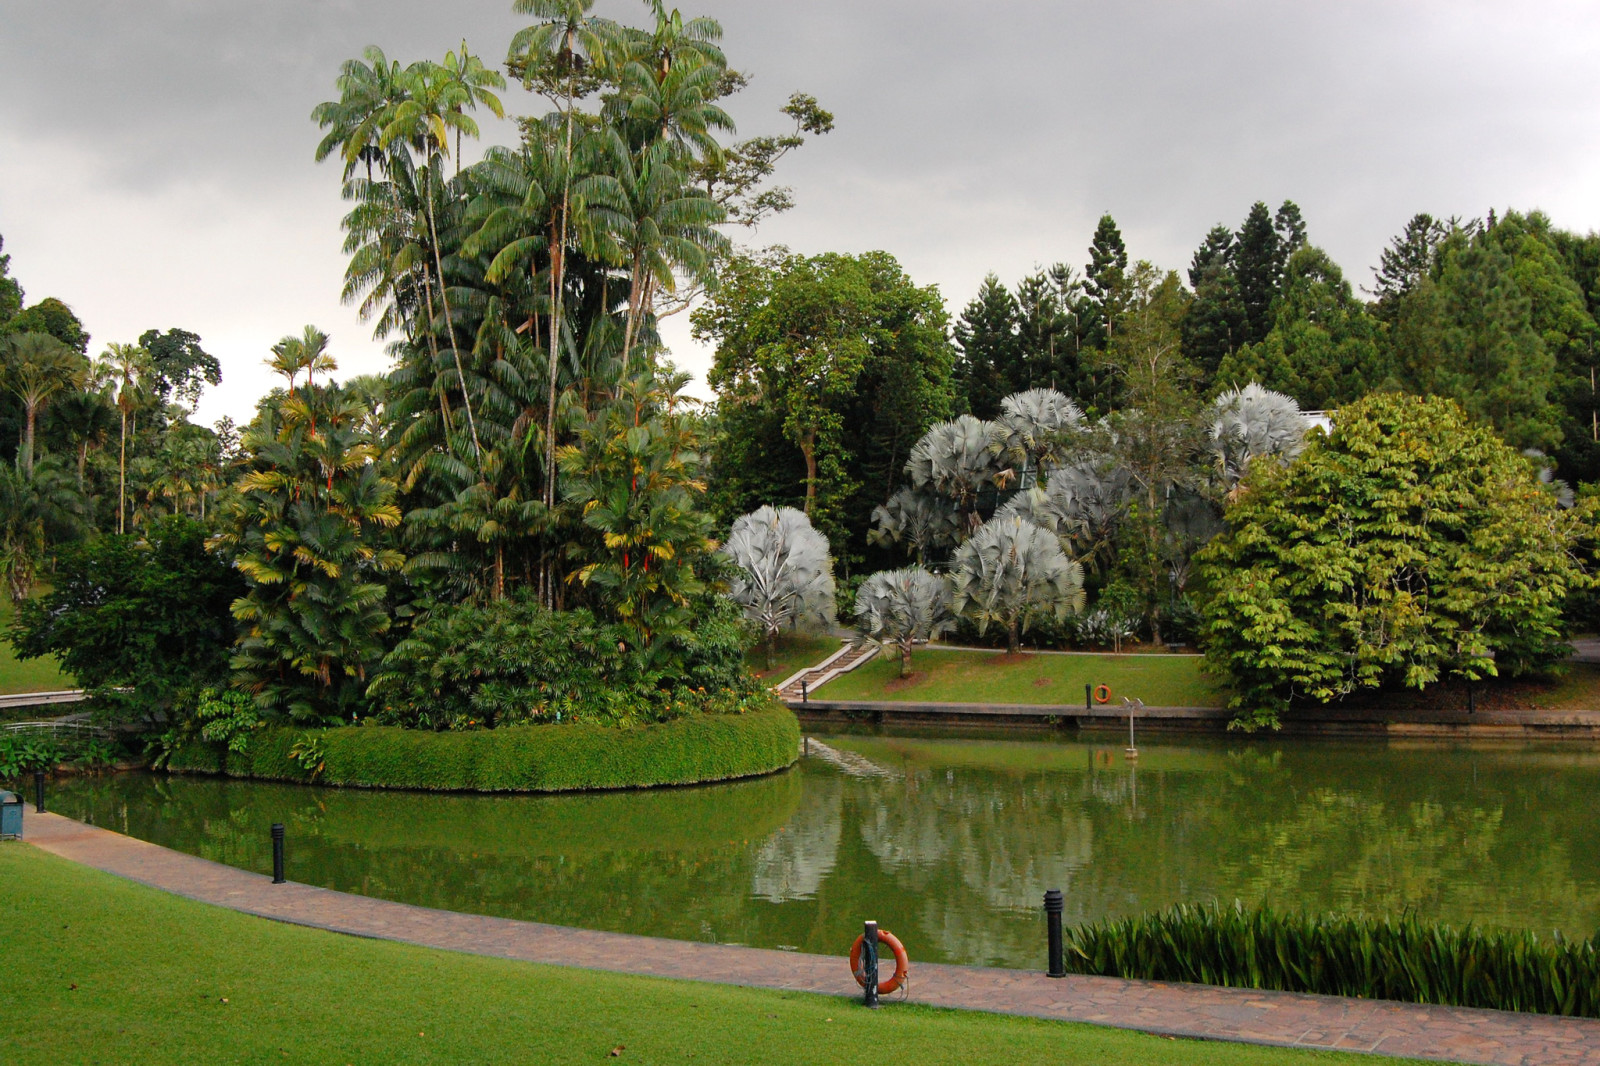 草, 公园, 树木, 草坪, 池塘, 棕榈树, 设计, 新加坡